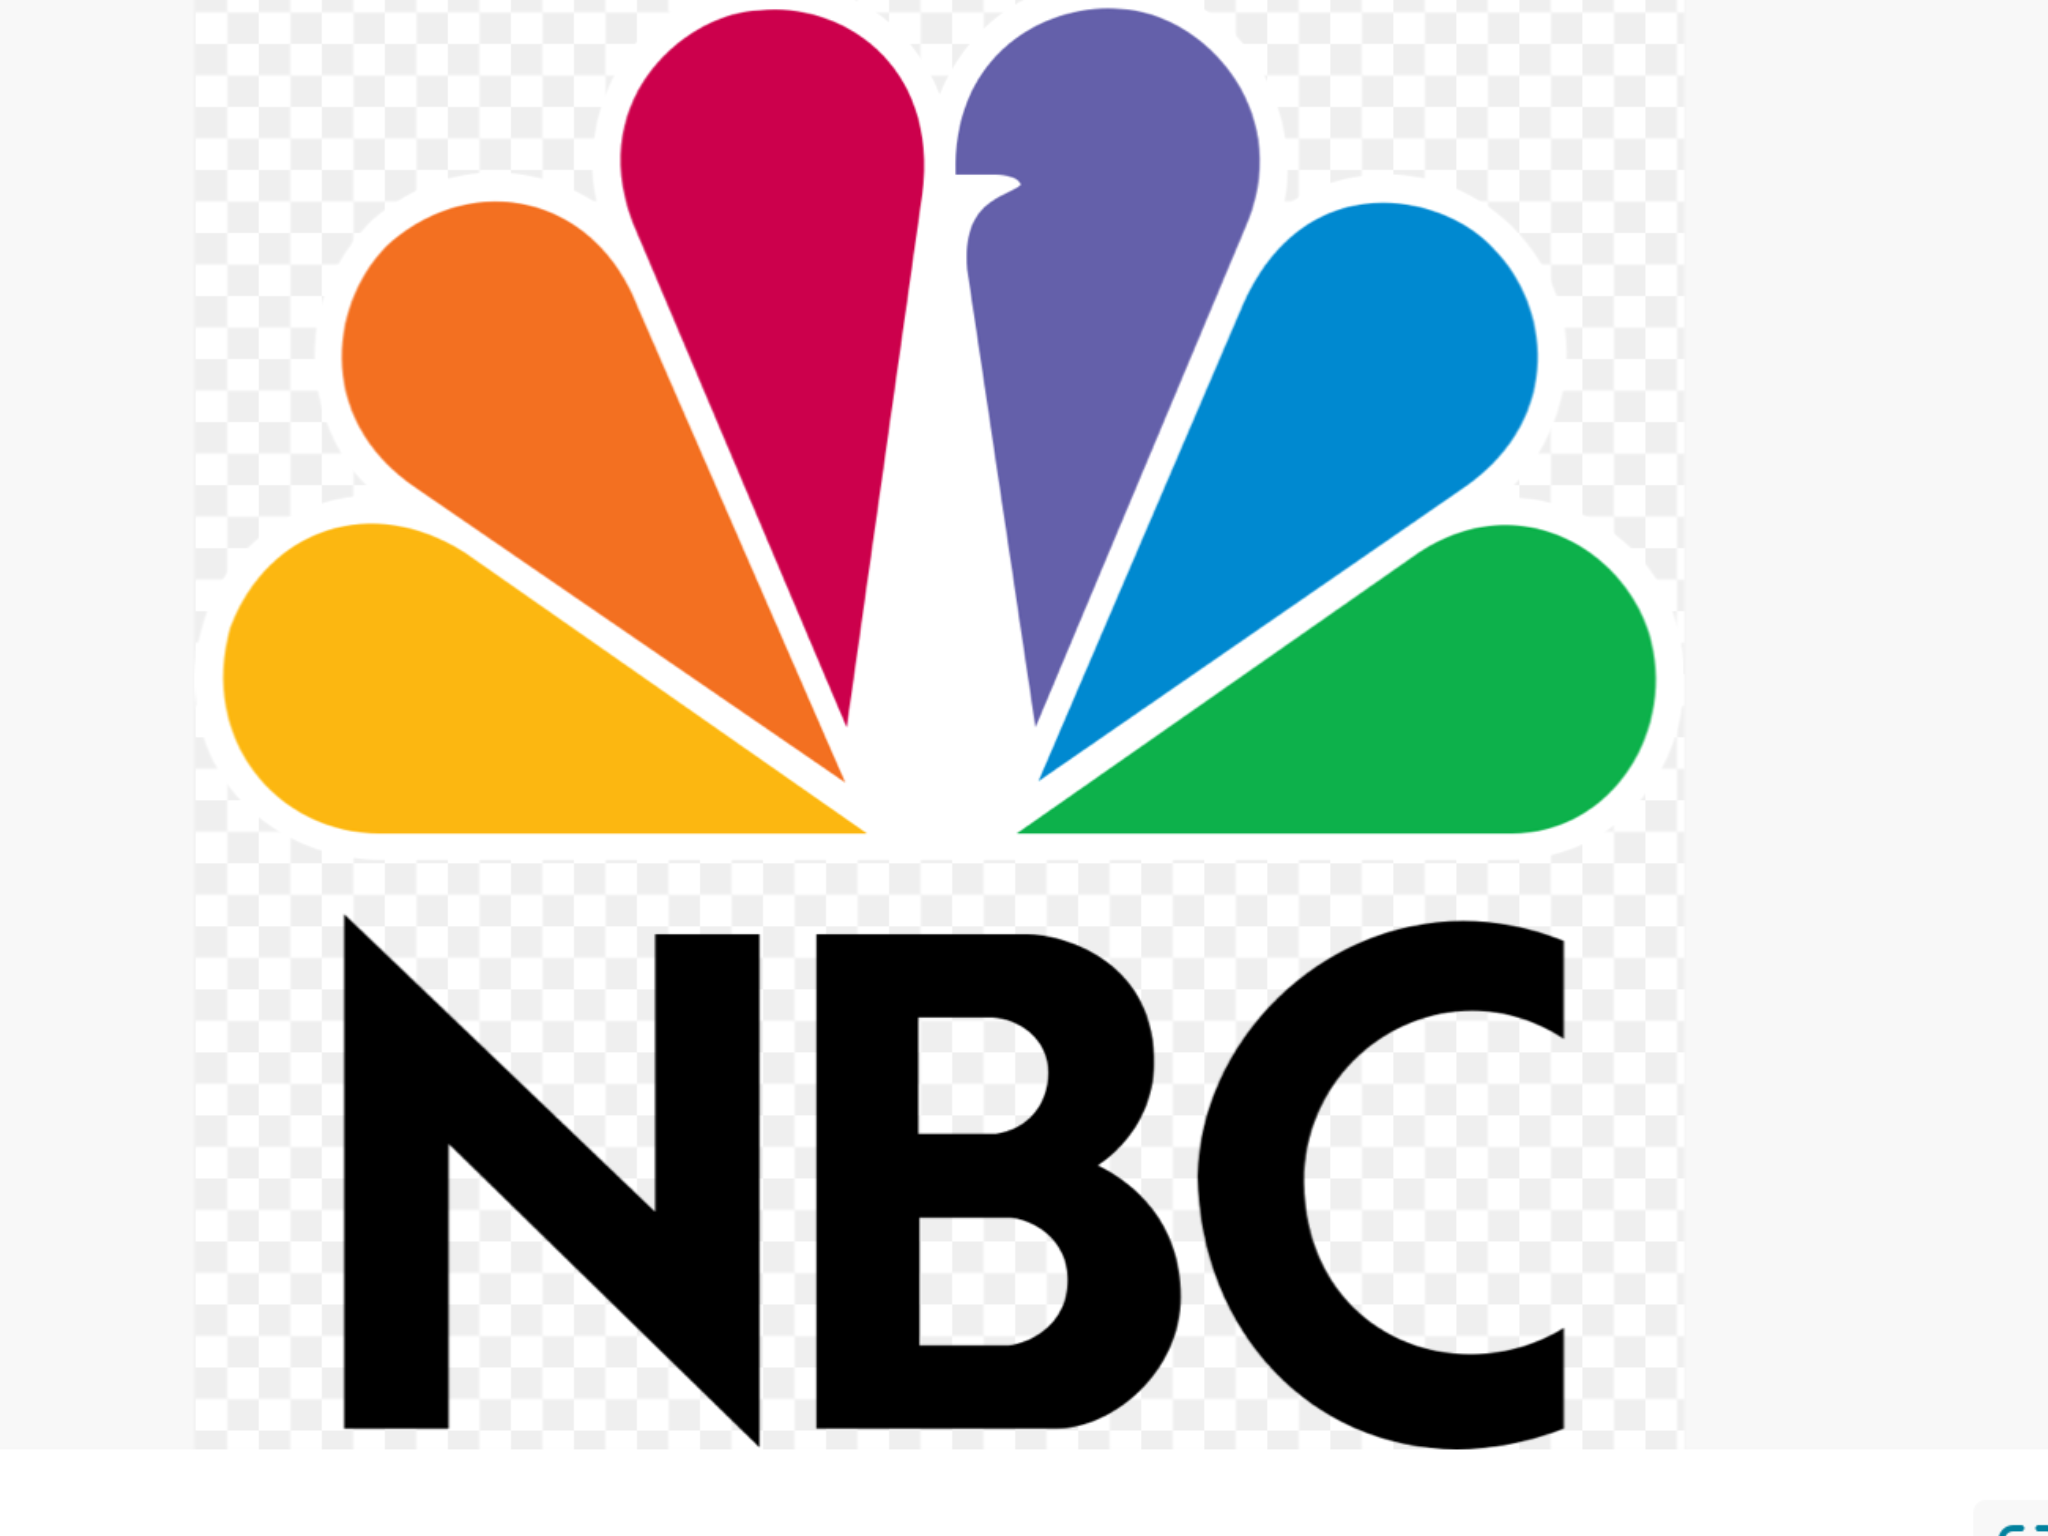 9News NBC